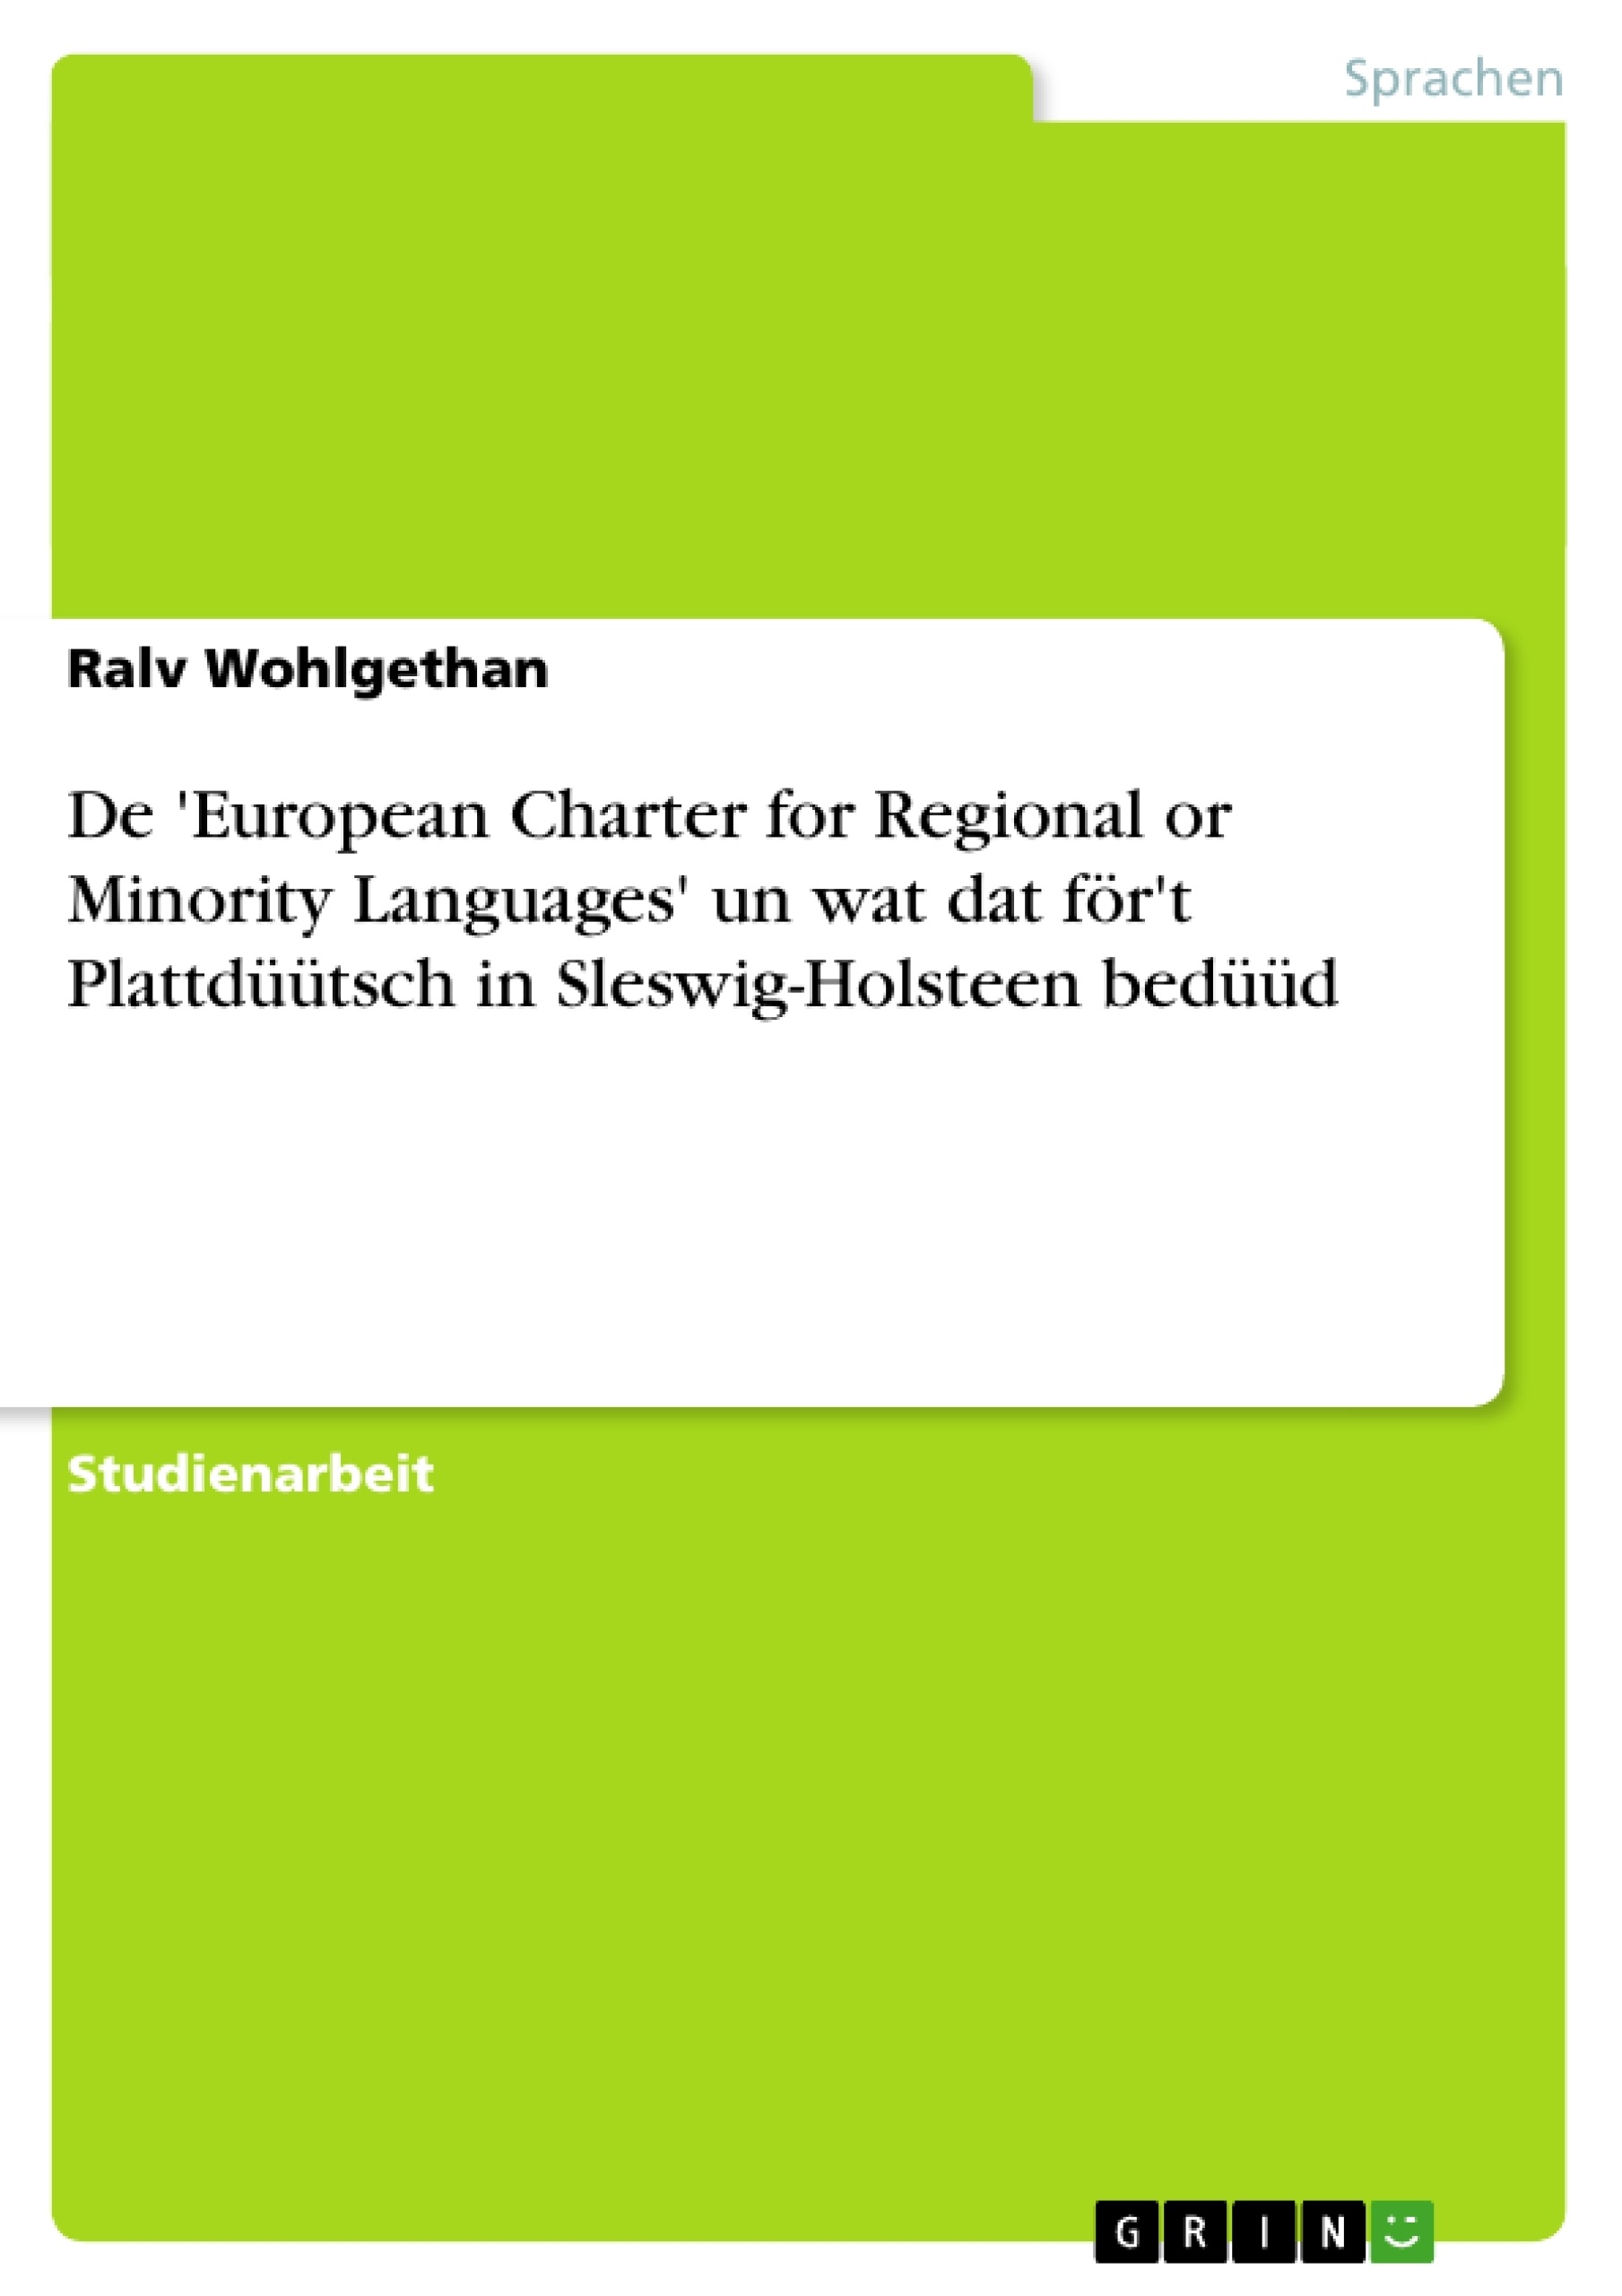 Titel: De 'European Charter for Regional or Minority Languages' un wat dat för't Plattdüütsch in Sleswig-Holsteen bedüüd